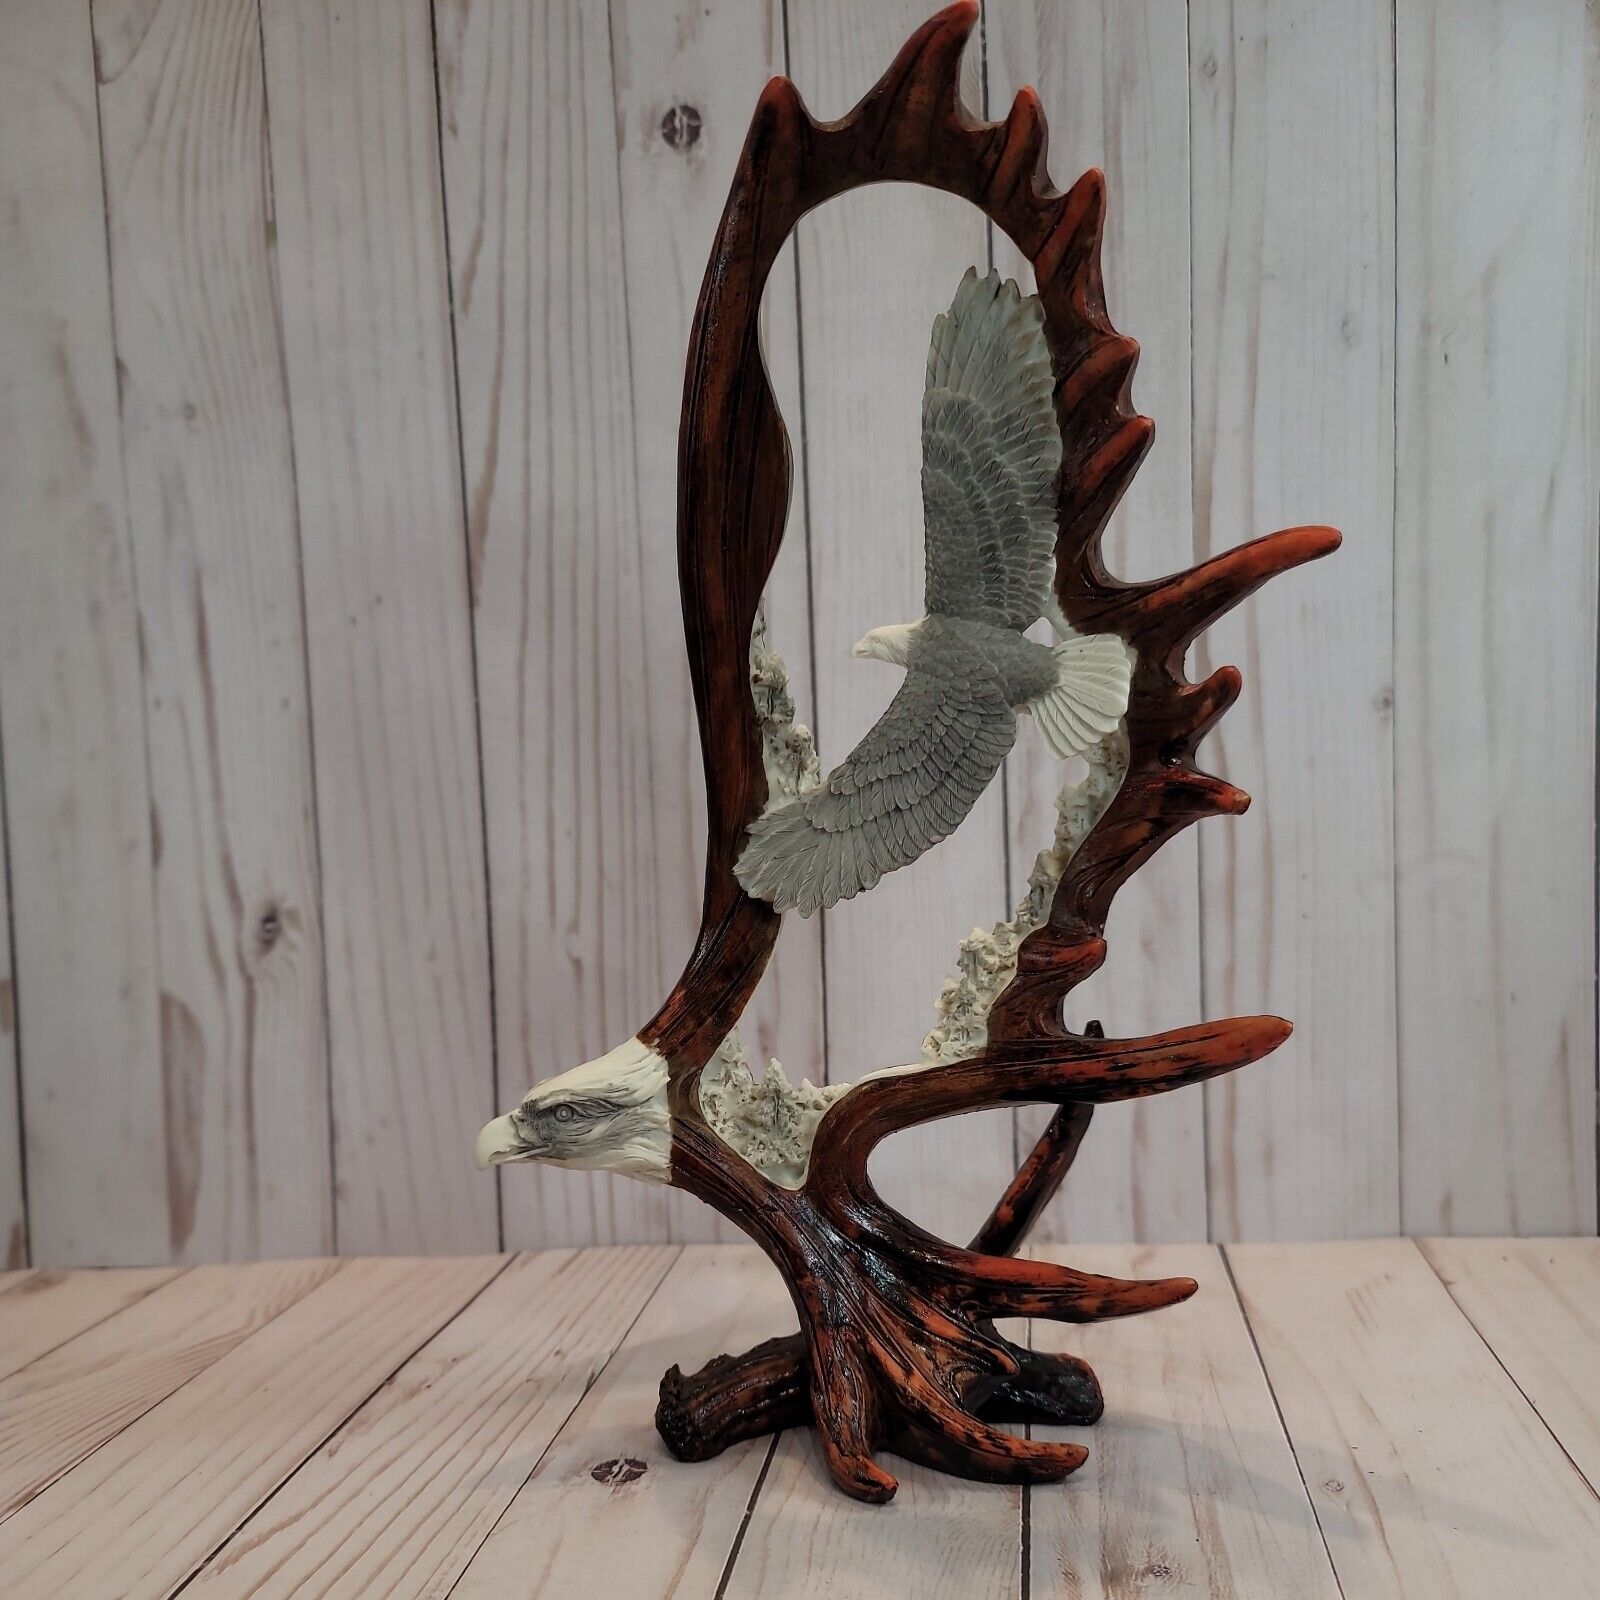 Spirit of America Antler Eagle Resin Sculpture Designed by Alaska Jack’s 12x8